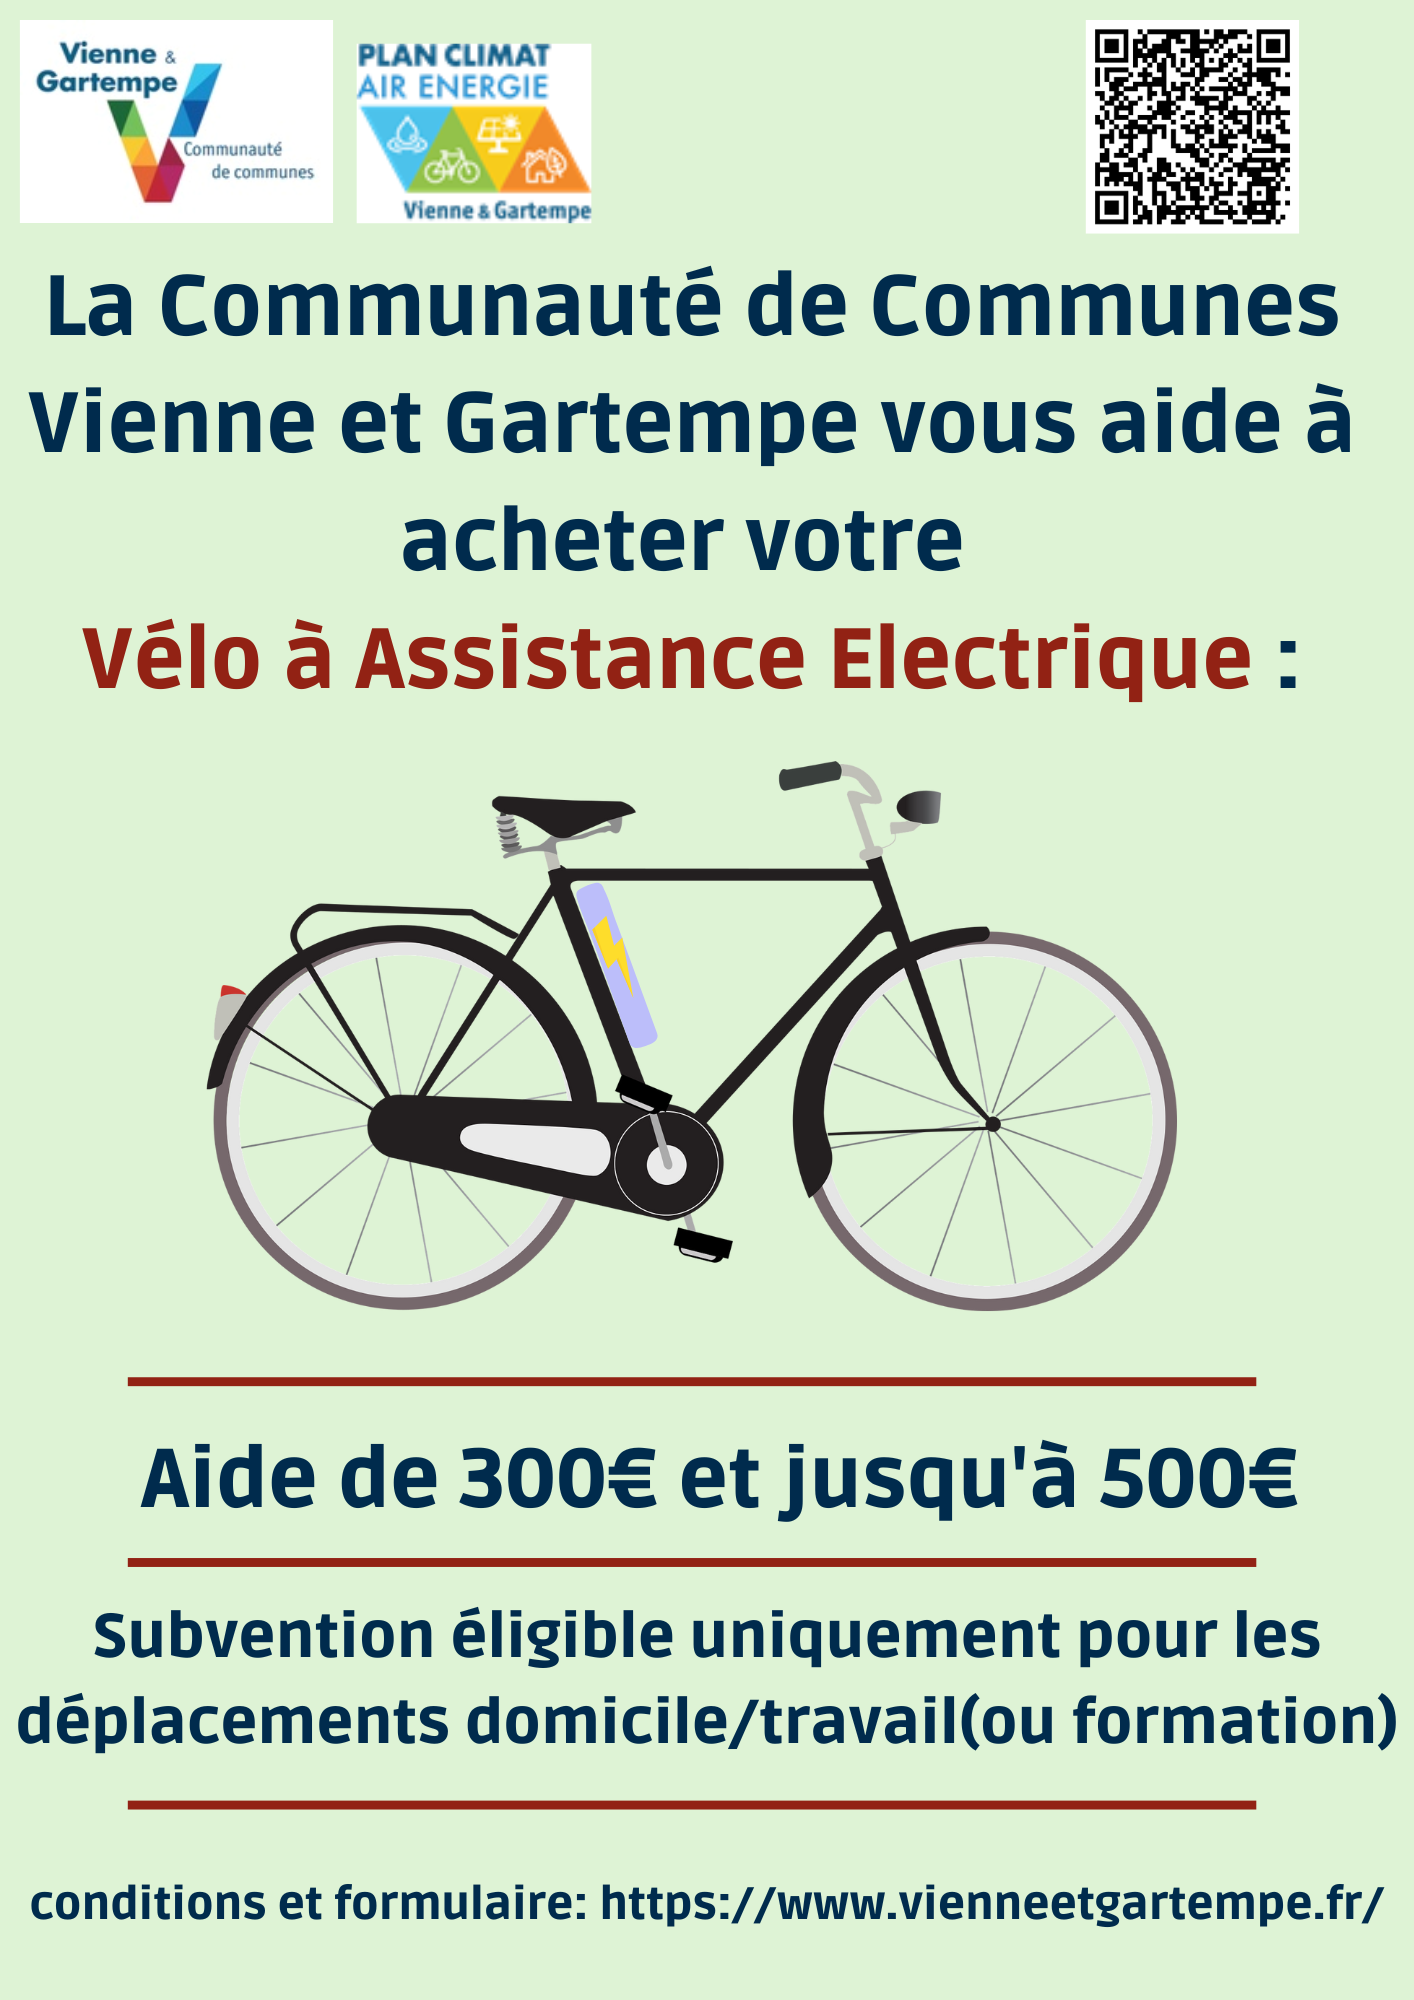 La Communauté de Communes Vienne et gartempe vous aide à acheter votre vélo à assistance electrique.png